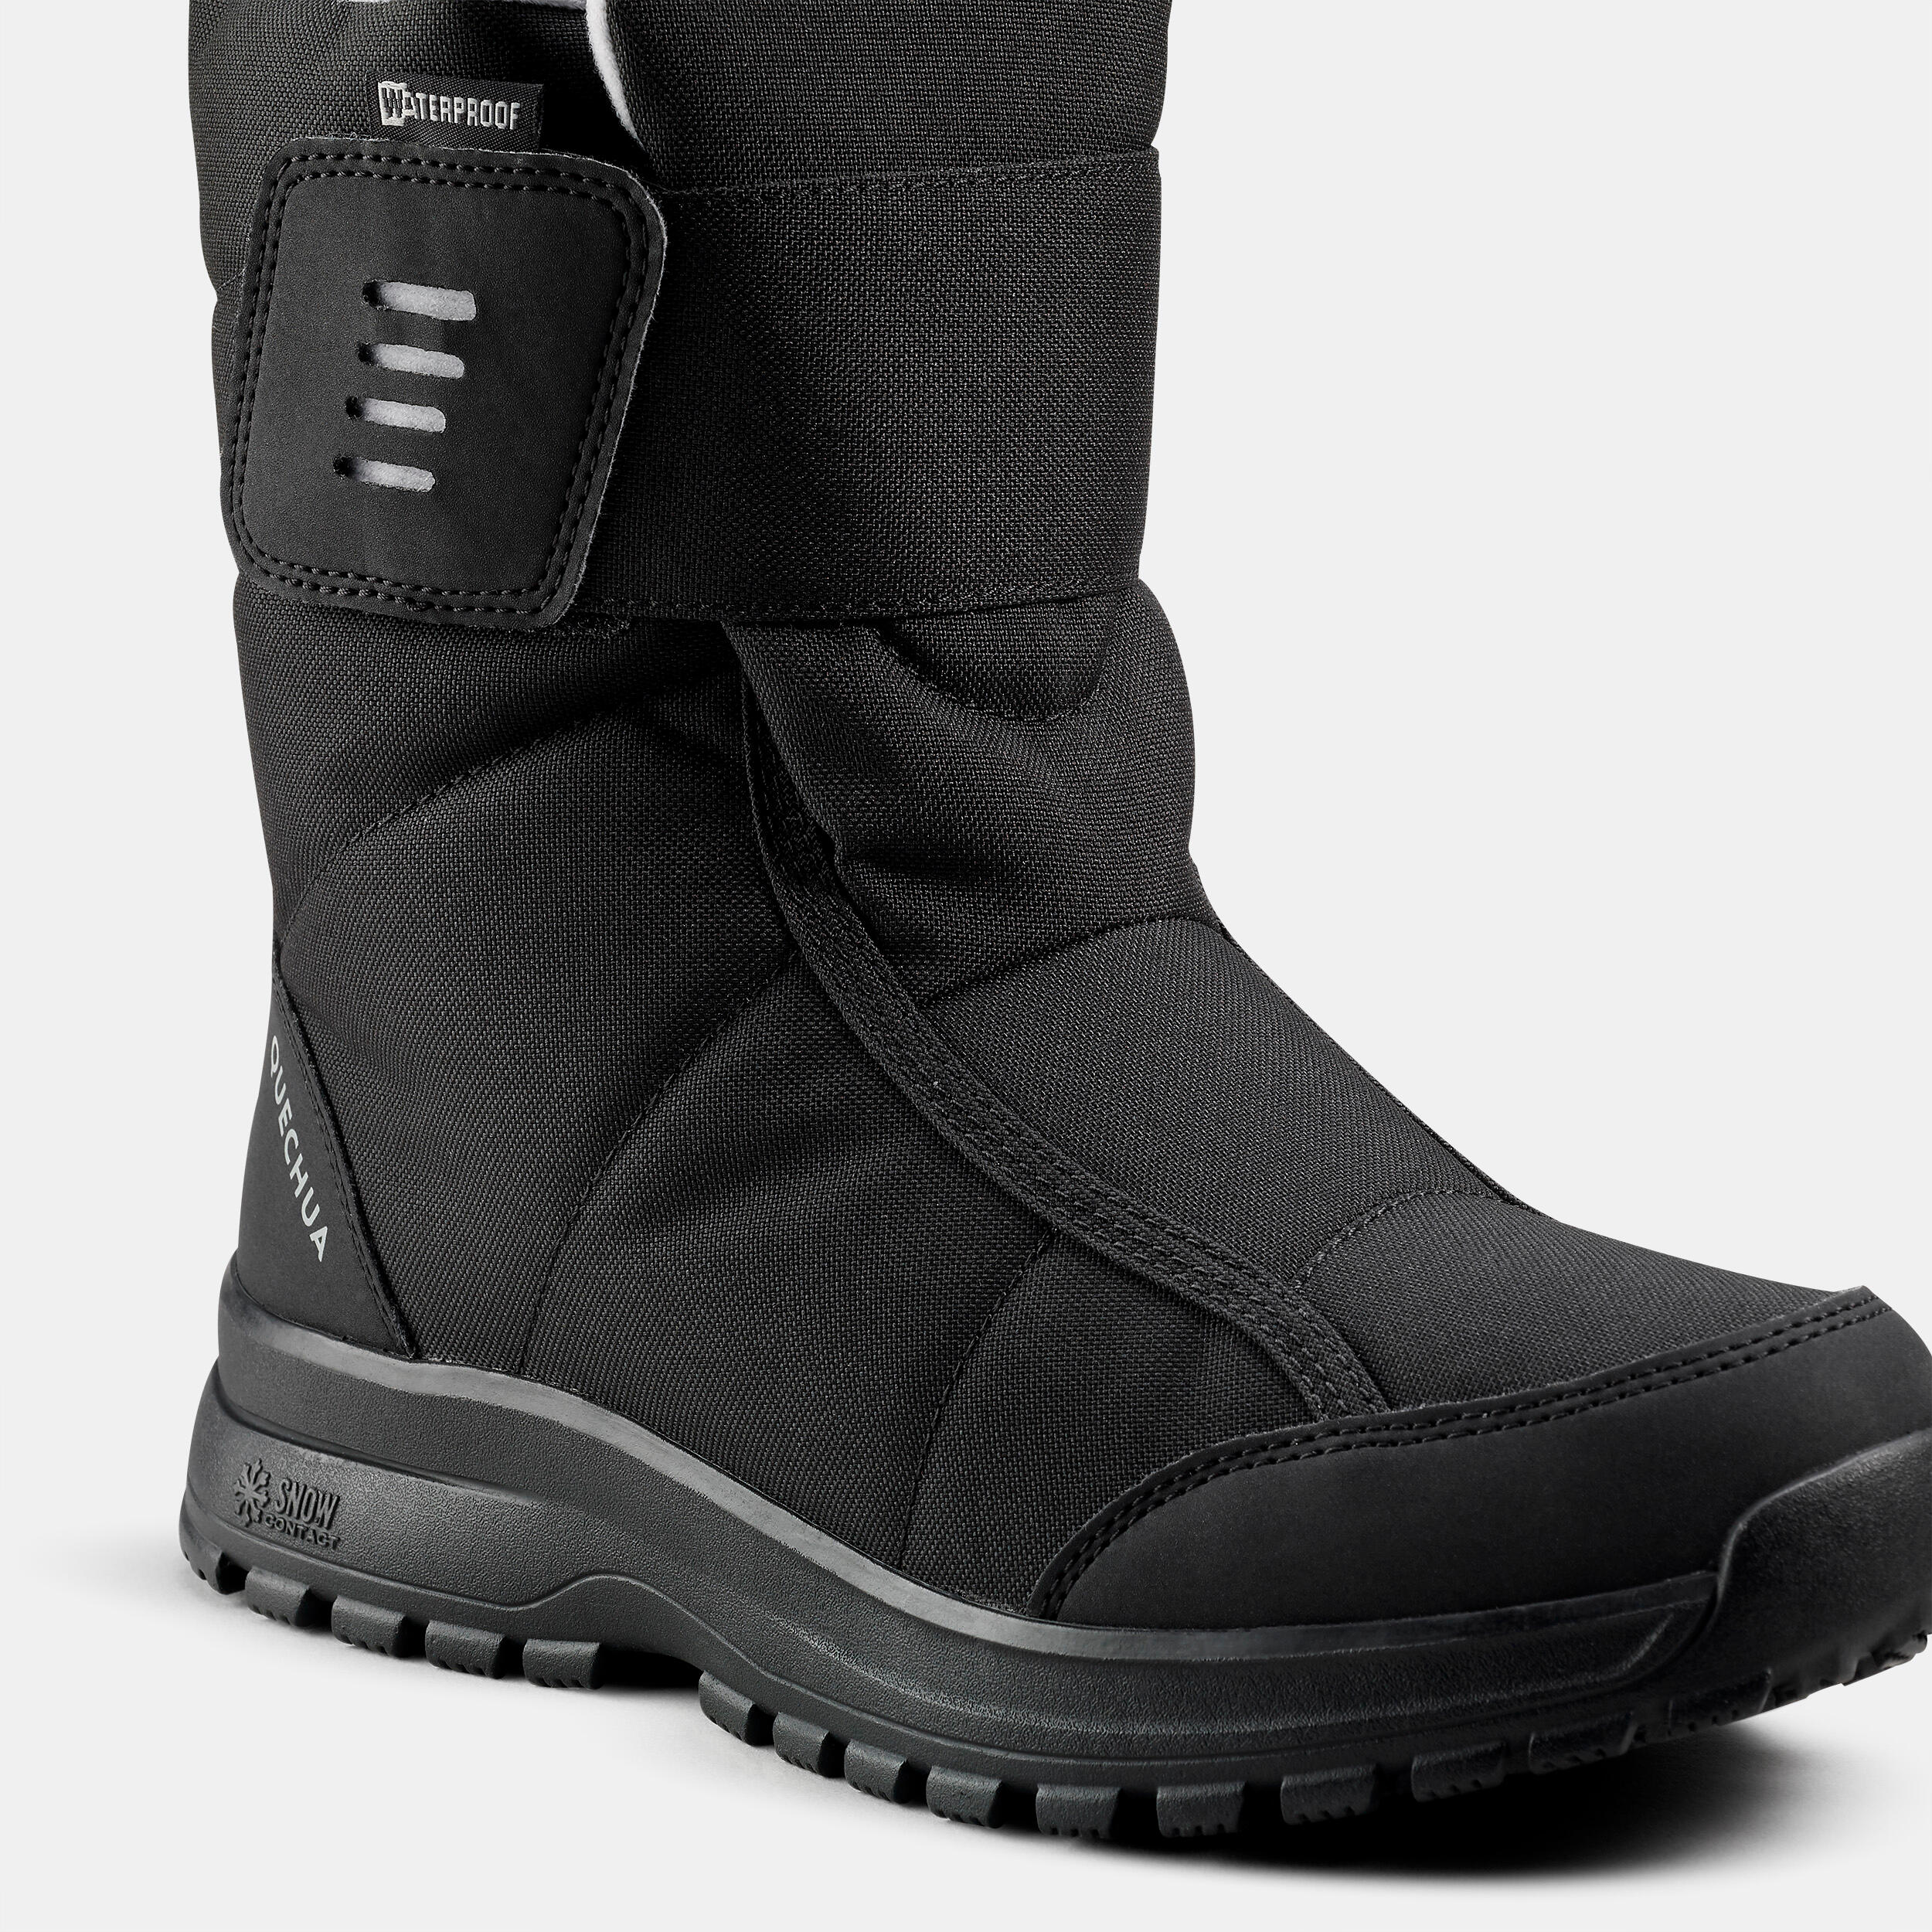 Women's warm waterproof snow hiking boots - SH100 Velcro  5/5